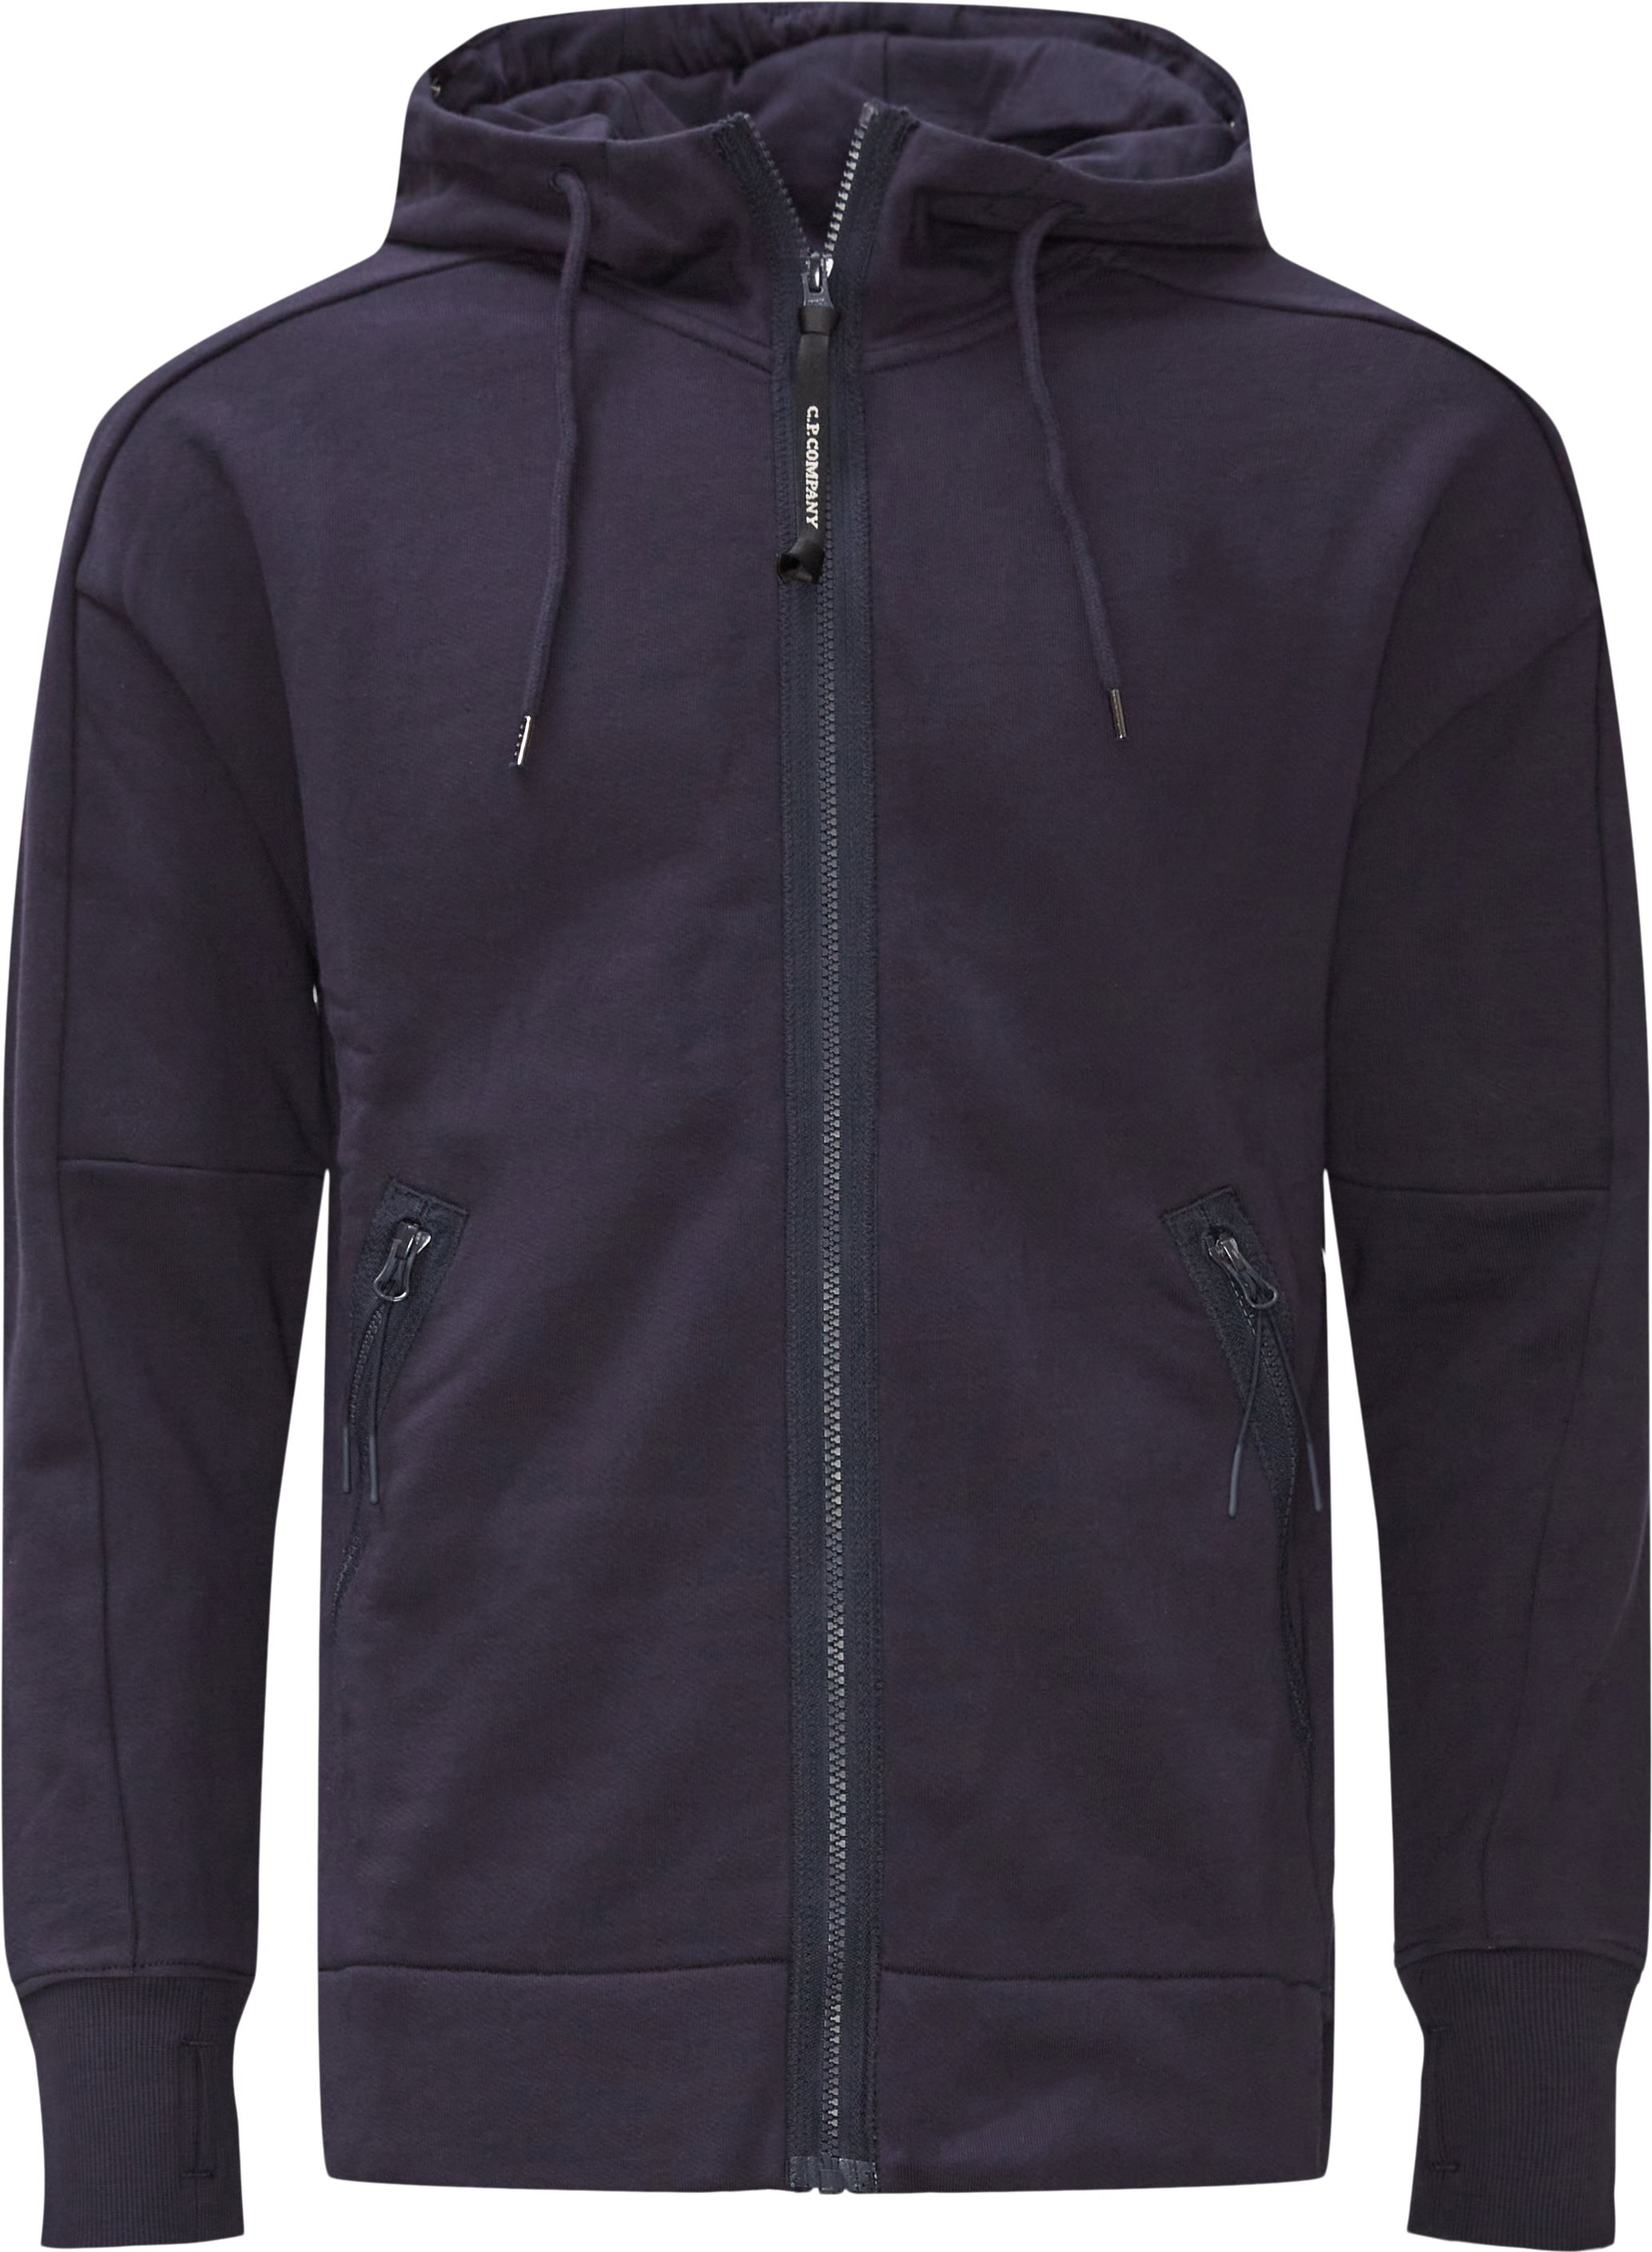 Diogonal Raised Hooded Sweatshirt - Sweatshirts - Regular fit - Blå